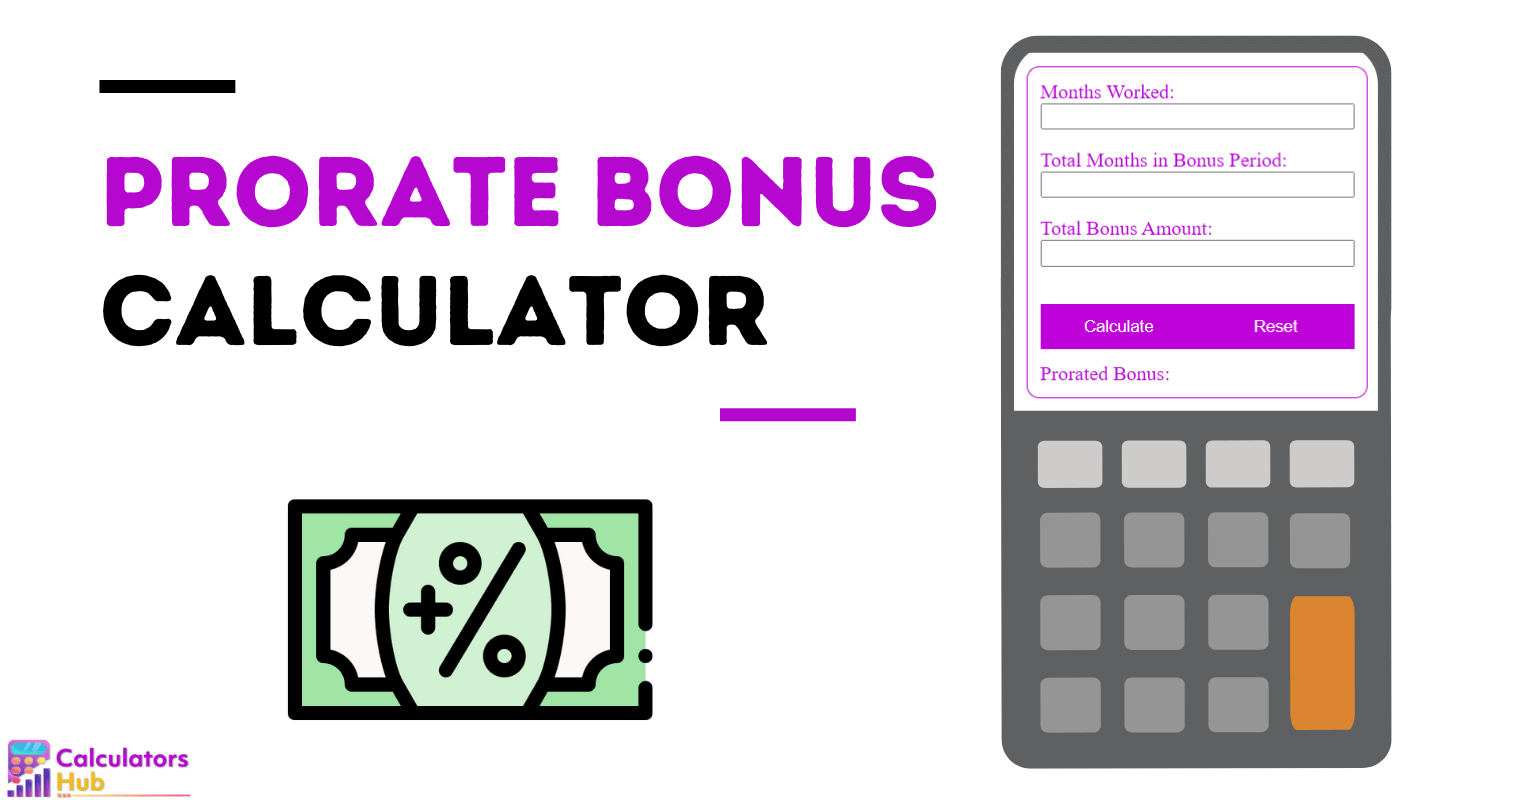 Prorate Bonus Calculator